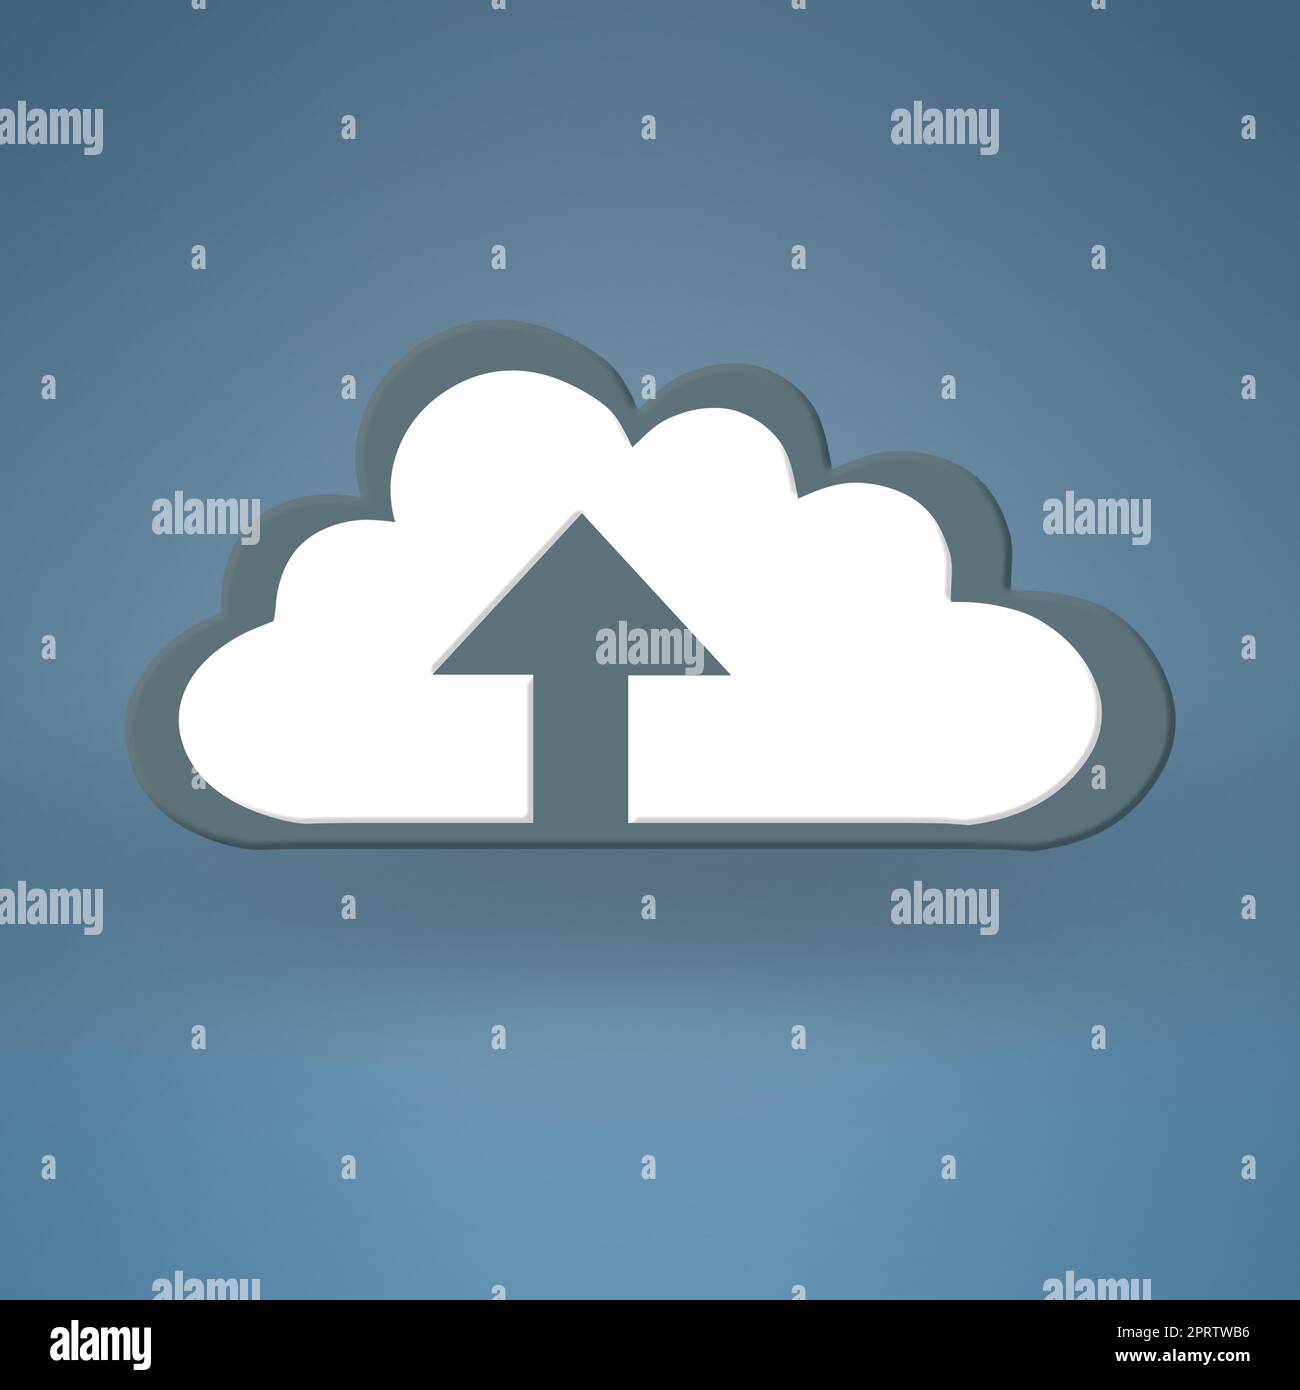 Il caricamento è stato completato. Immagine concettuale che rappresenta il cloud computing moderno. Foto Stock